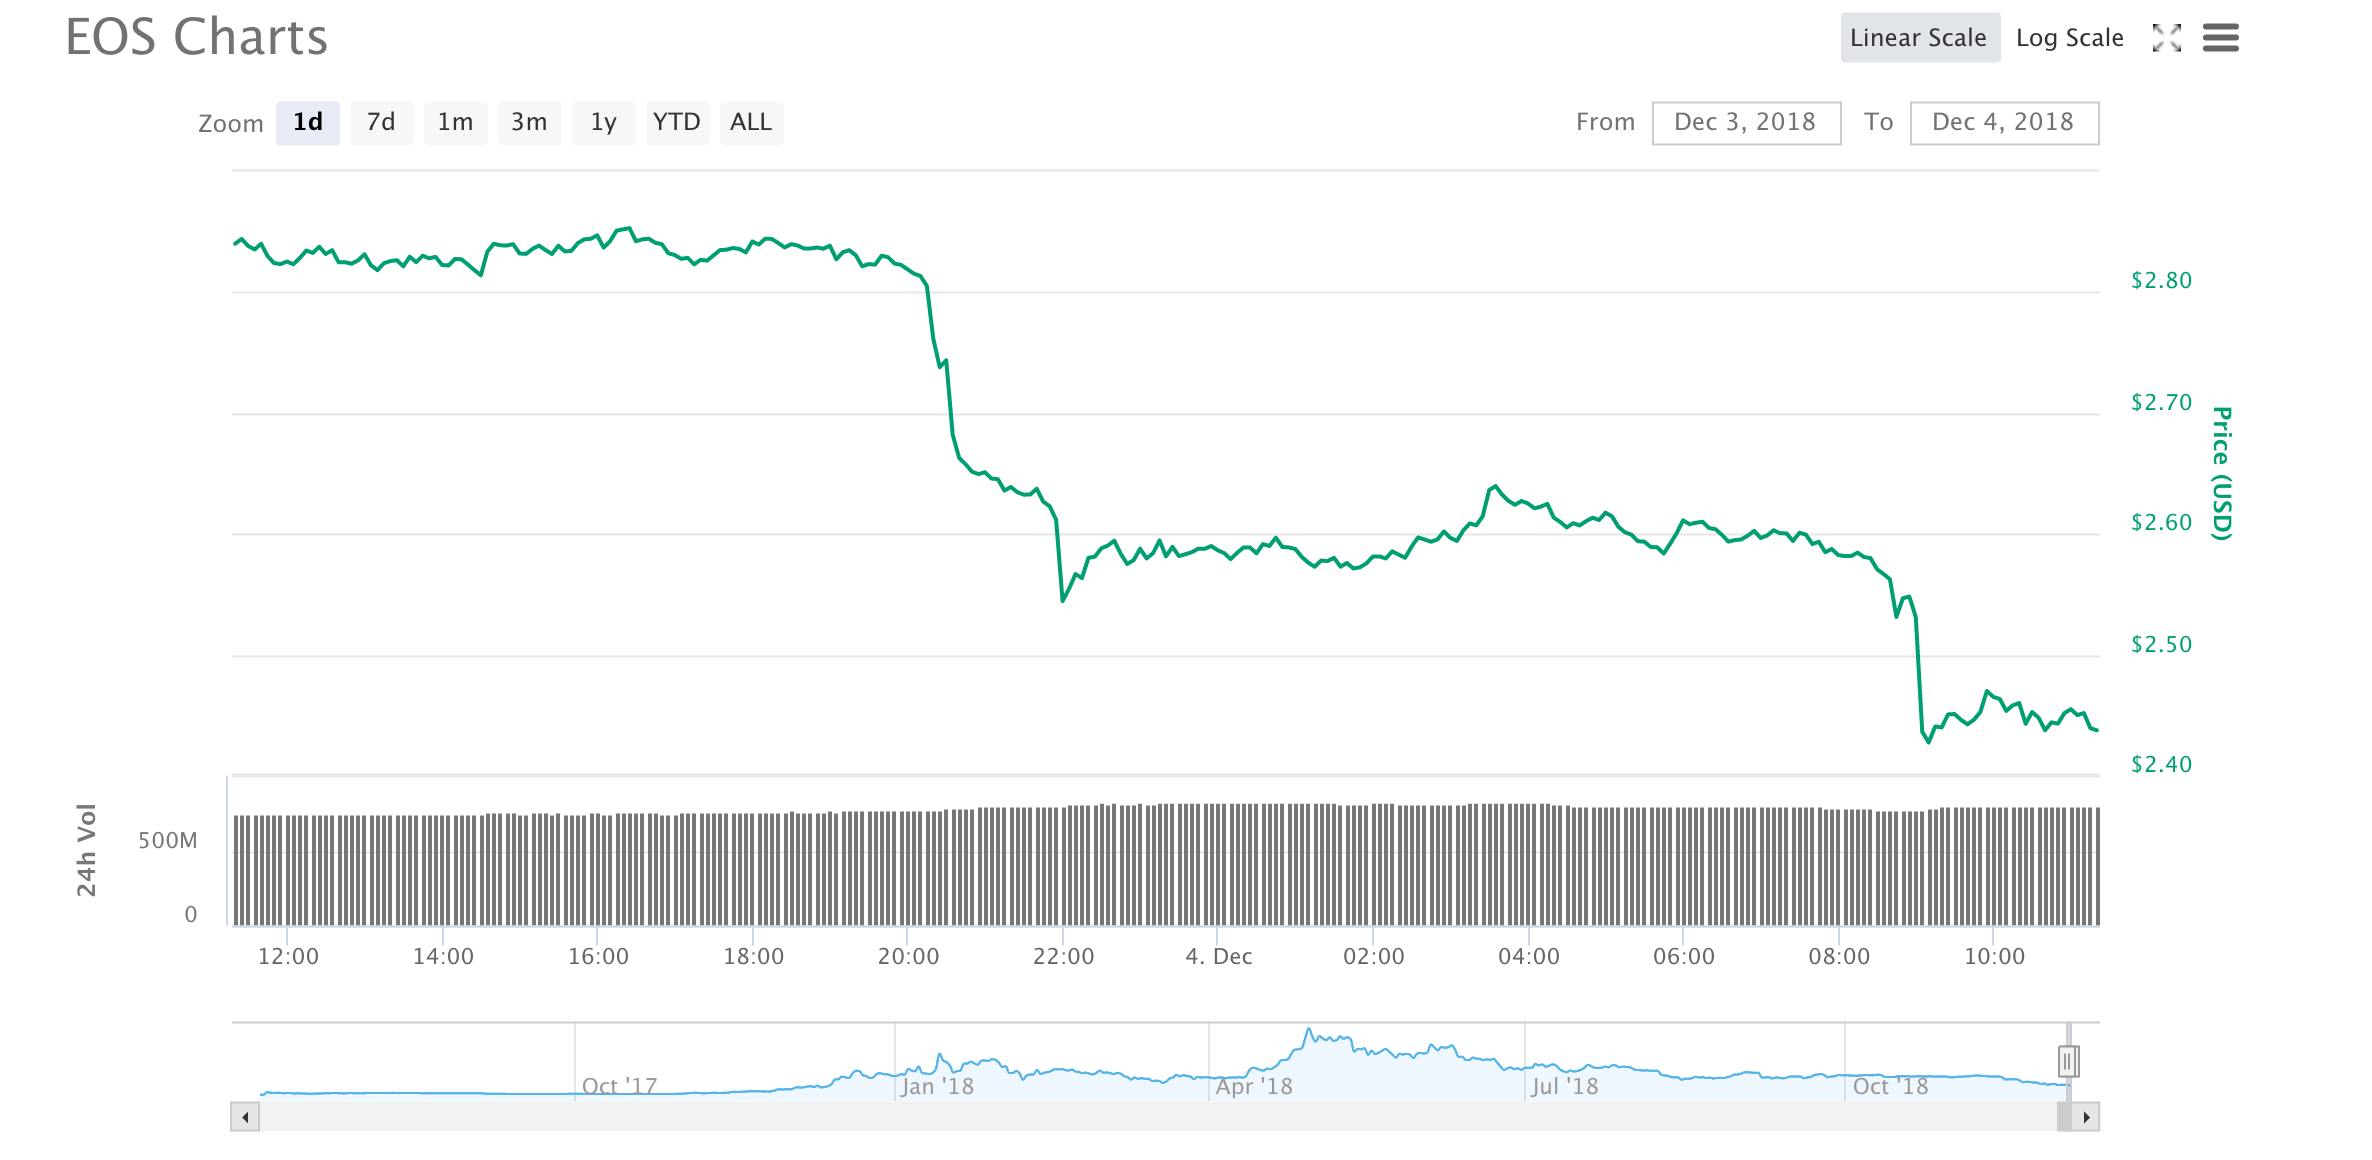 Bitcoin Chart Last 24 Hours